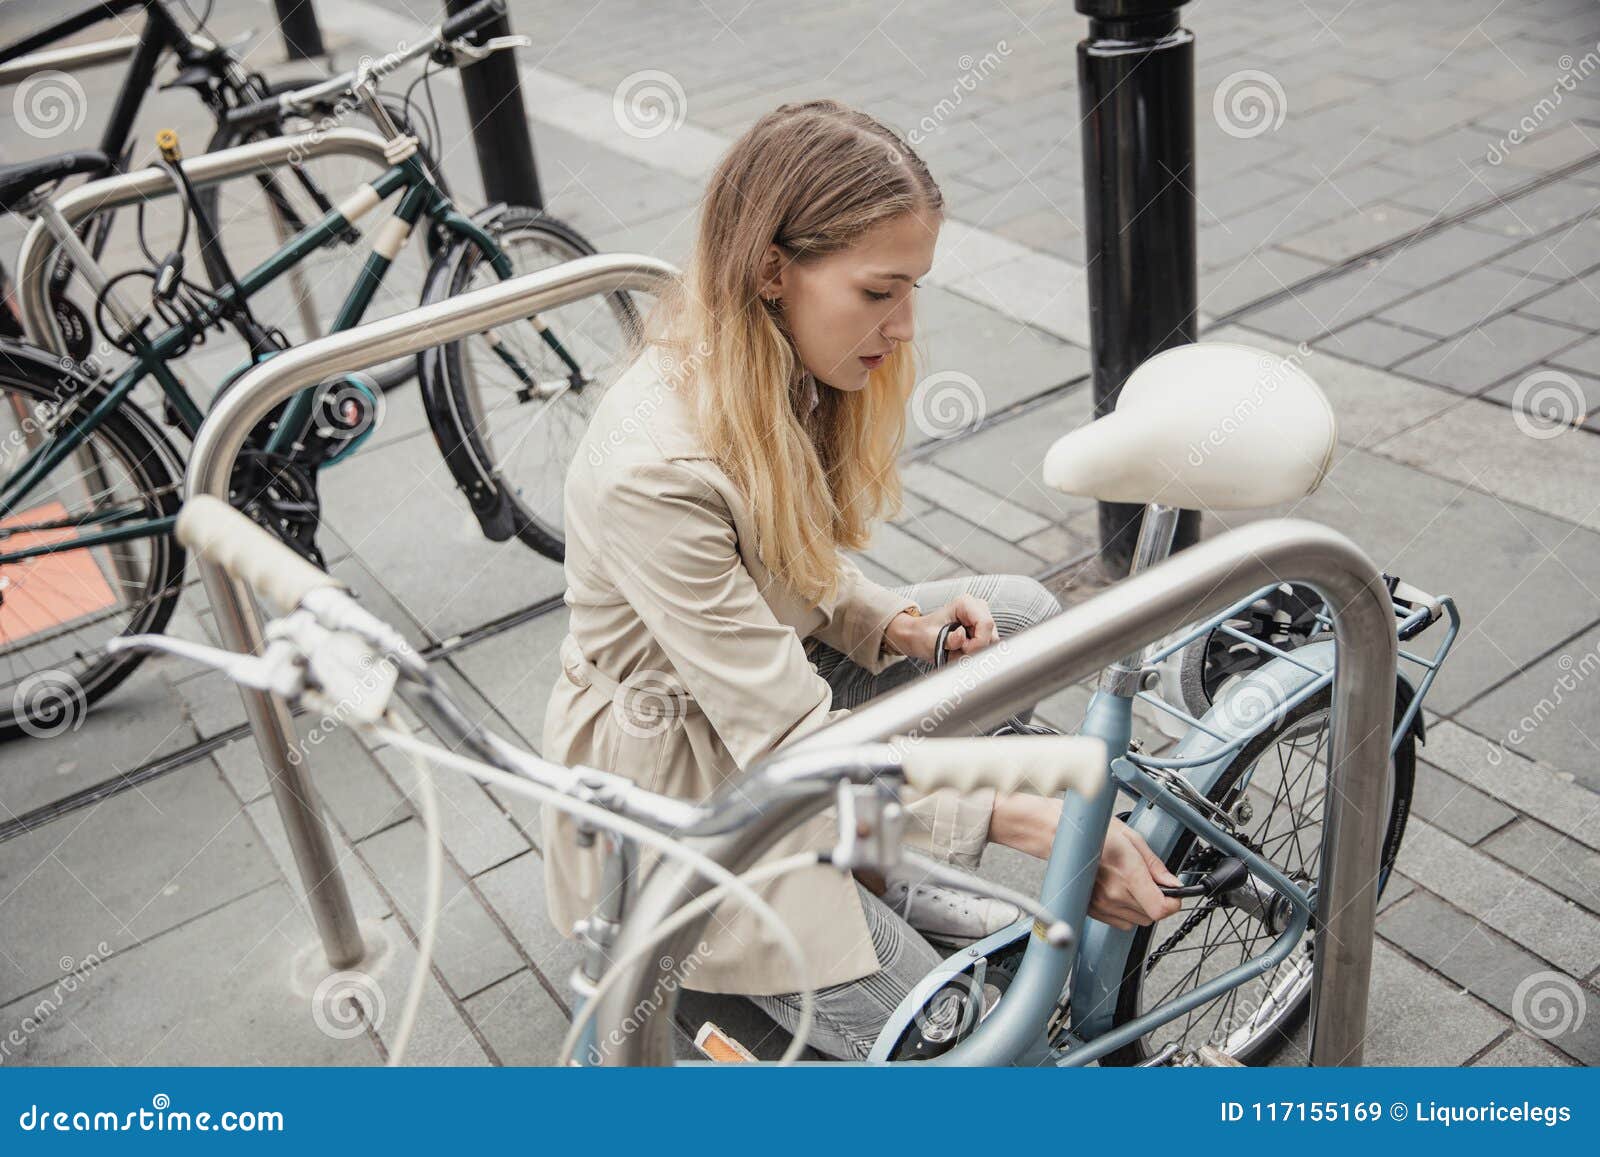 locking up her bicycle